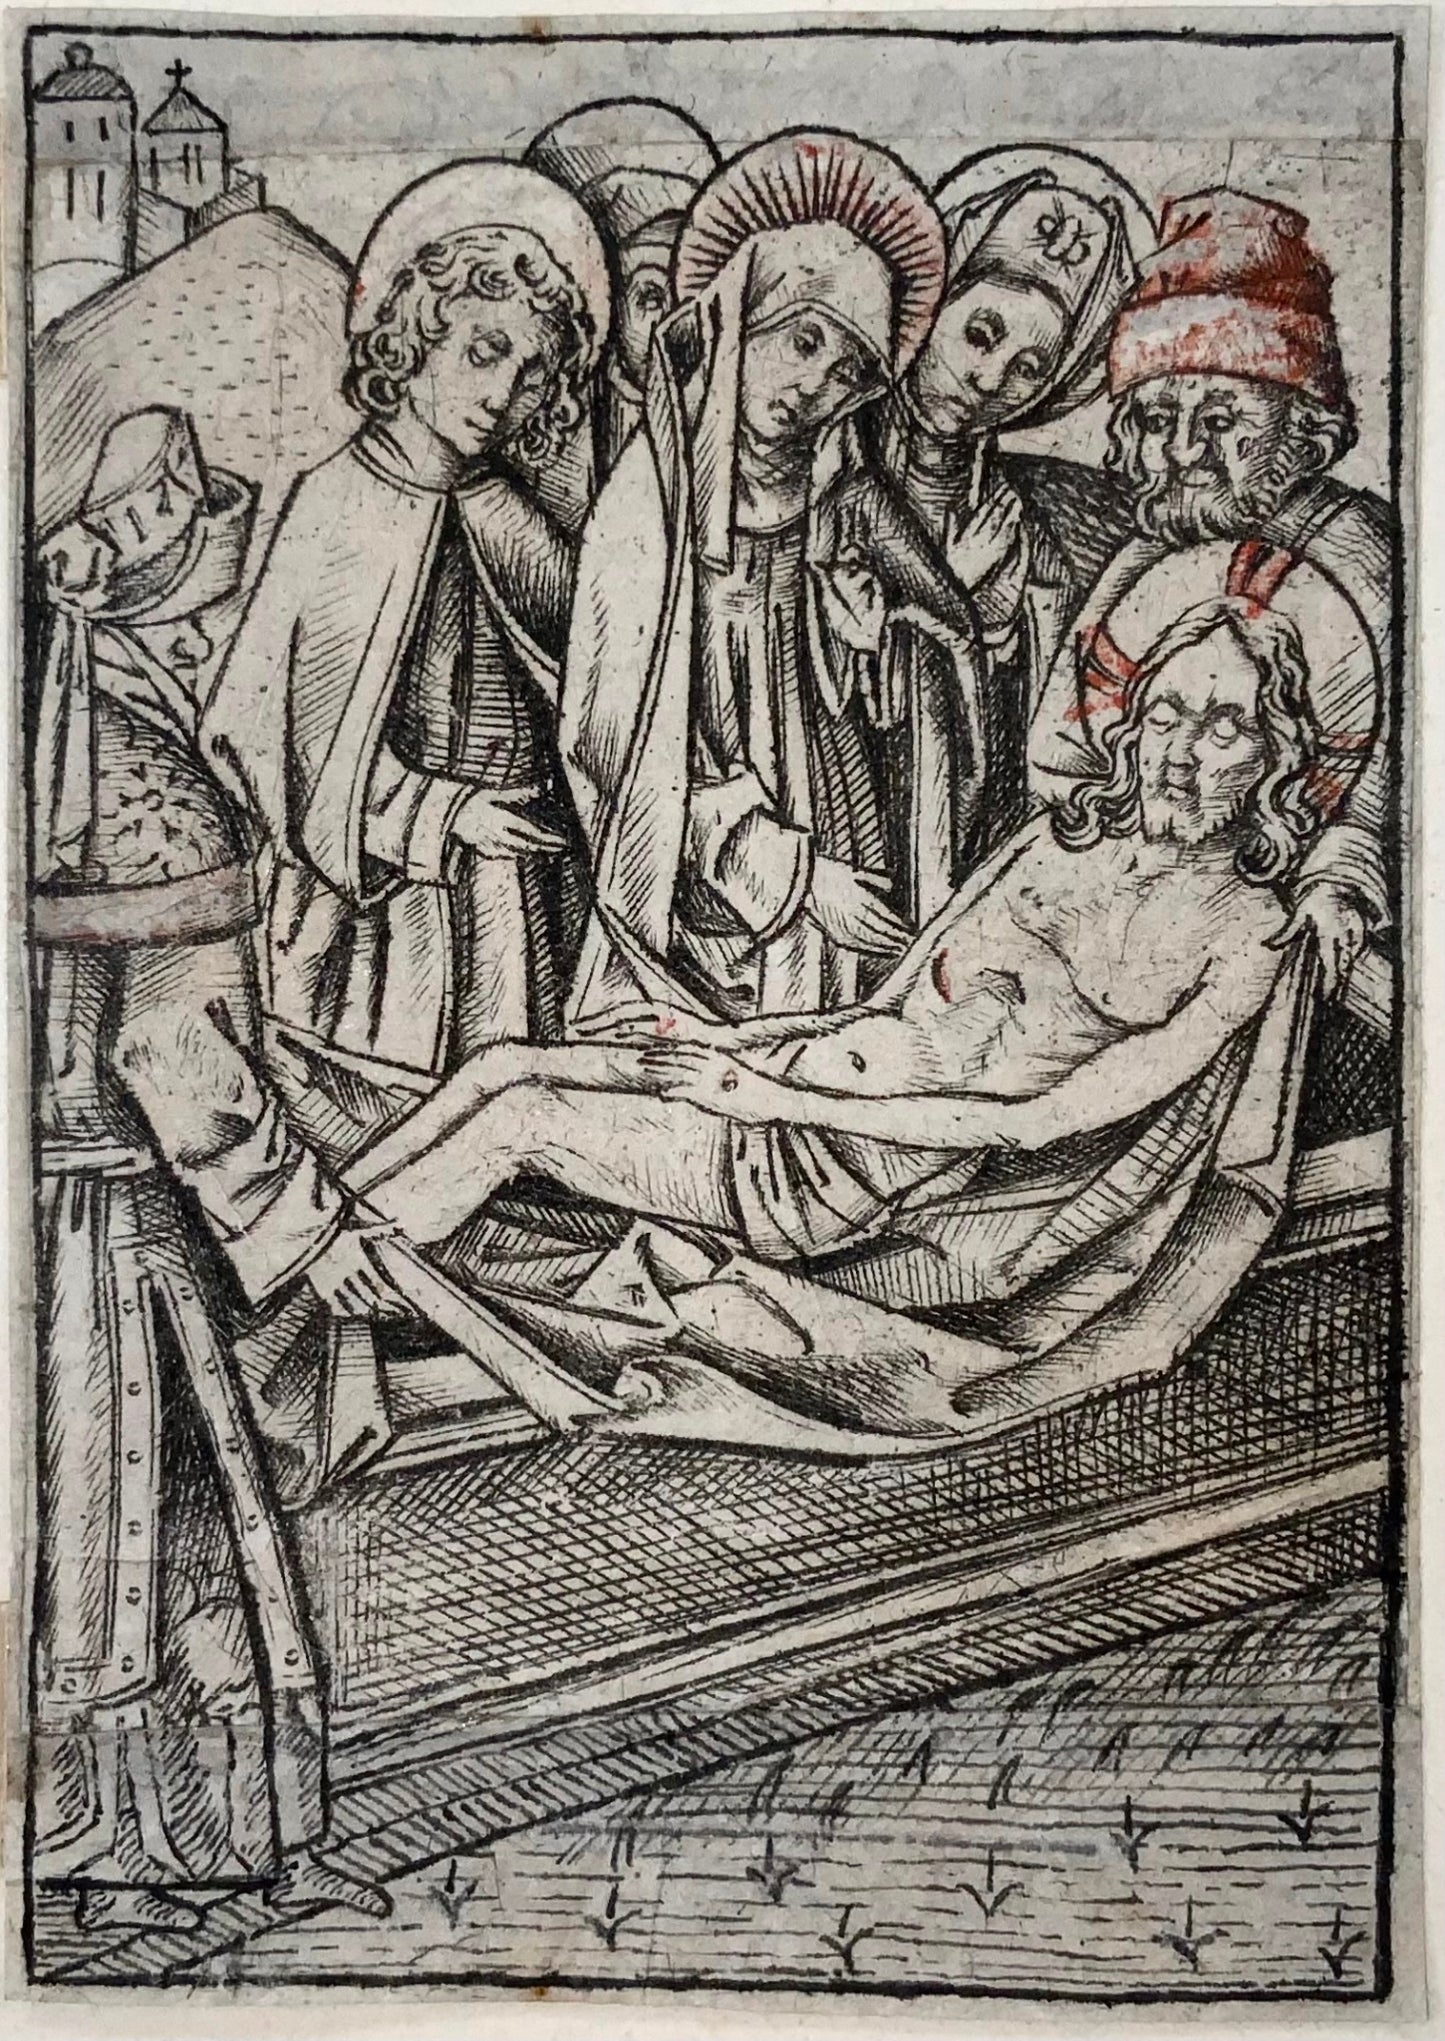 1460 c Israel van Meckenem, Enterrement du Christ, gravure sur métal, milieu du XVe siècle, art religieux